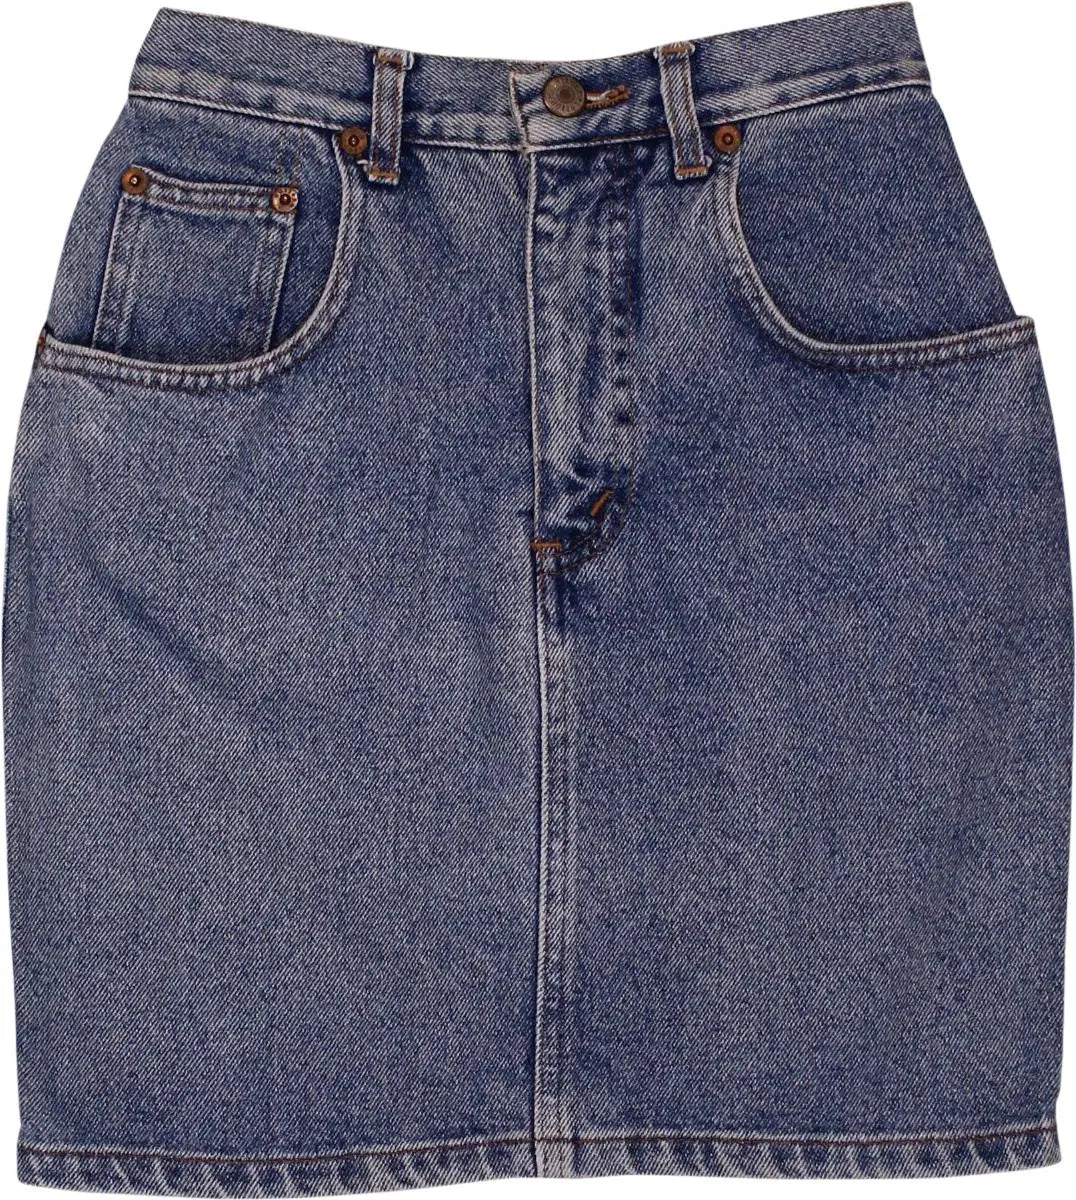 Uniform - Vintage Denim Skirt- ThriftTale.com - Vintage and second handclothing